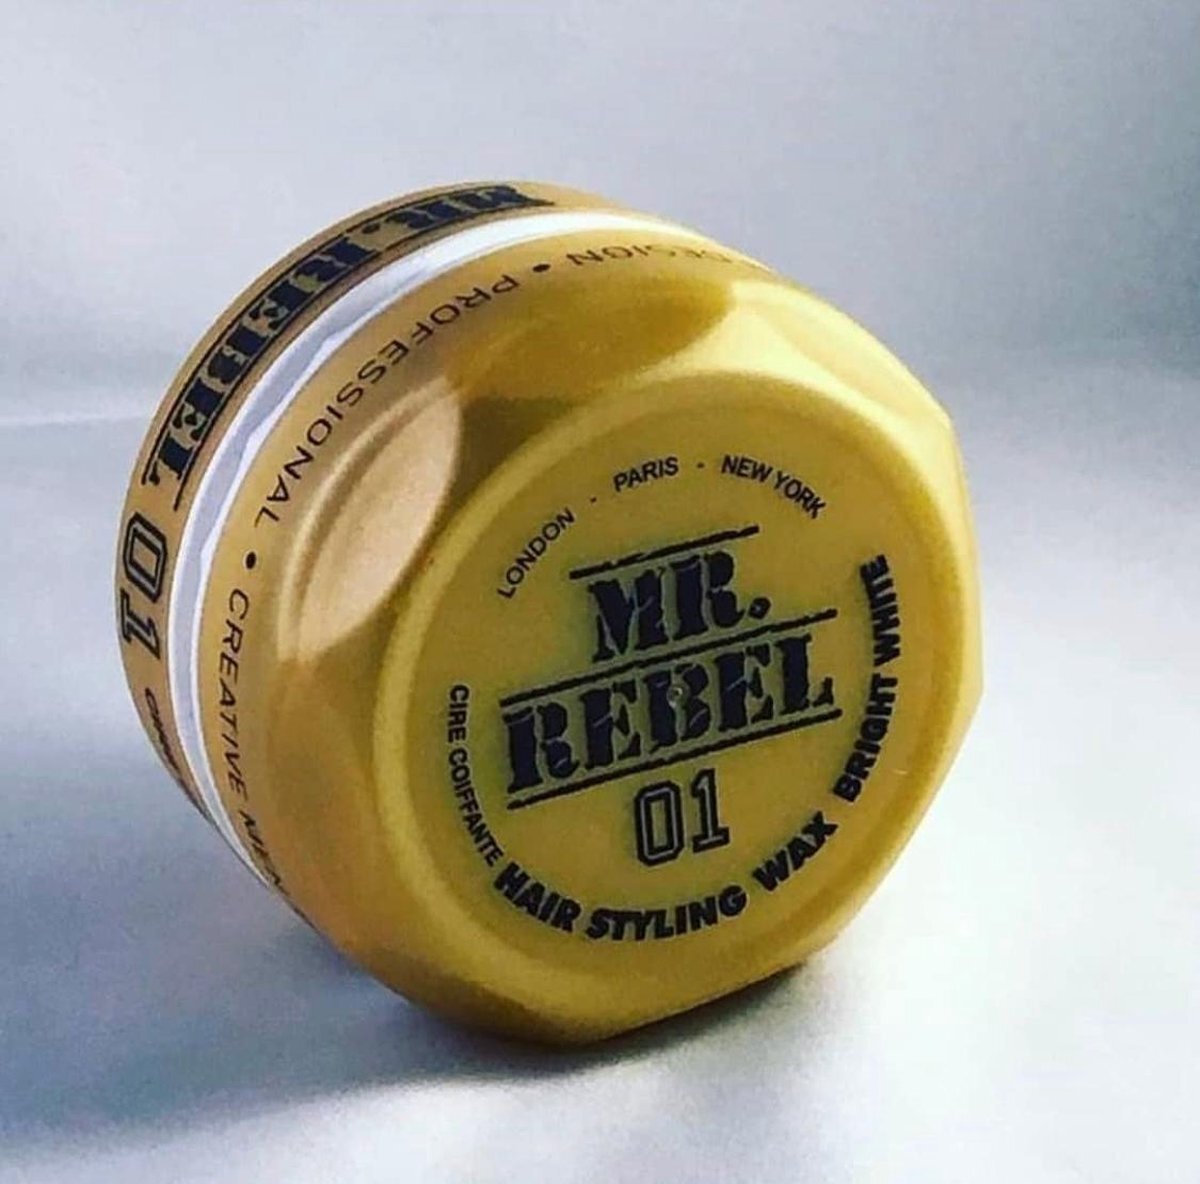 Mr. Rebel Haar Wax Mr.Rebel 01 Bright Hair Styling Wax 5 Stuks